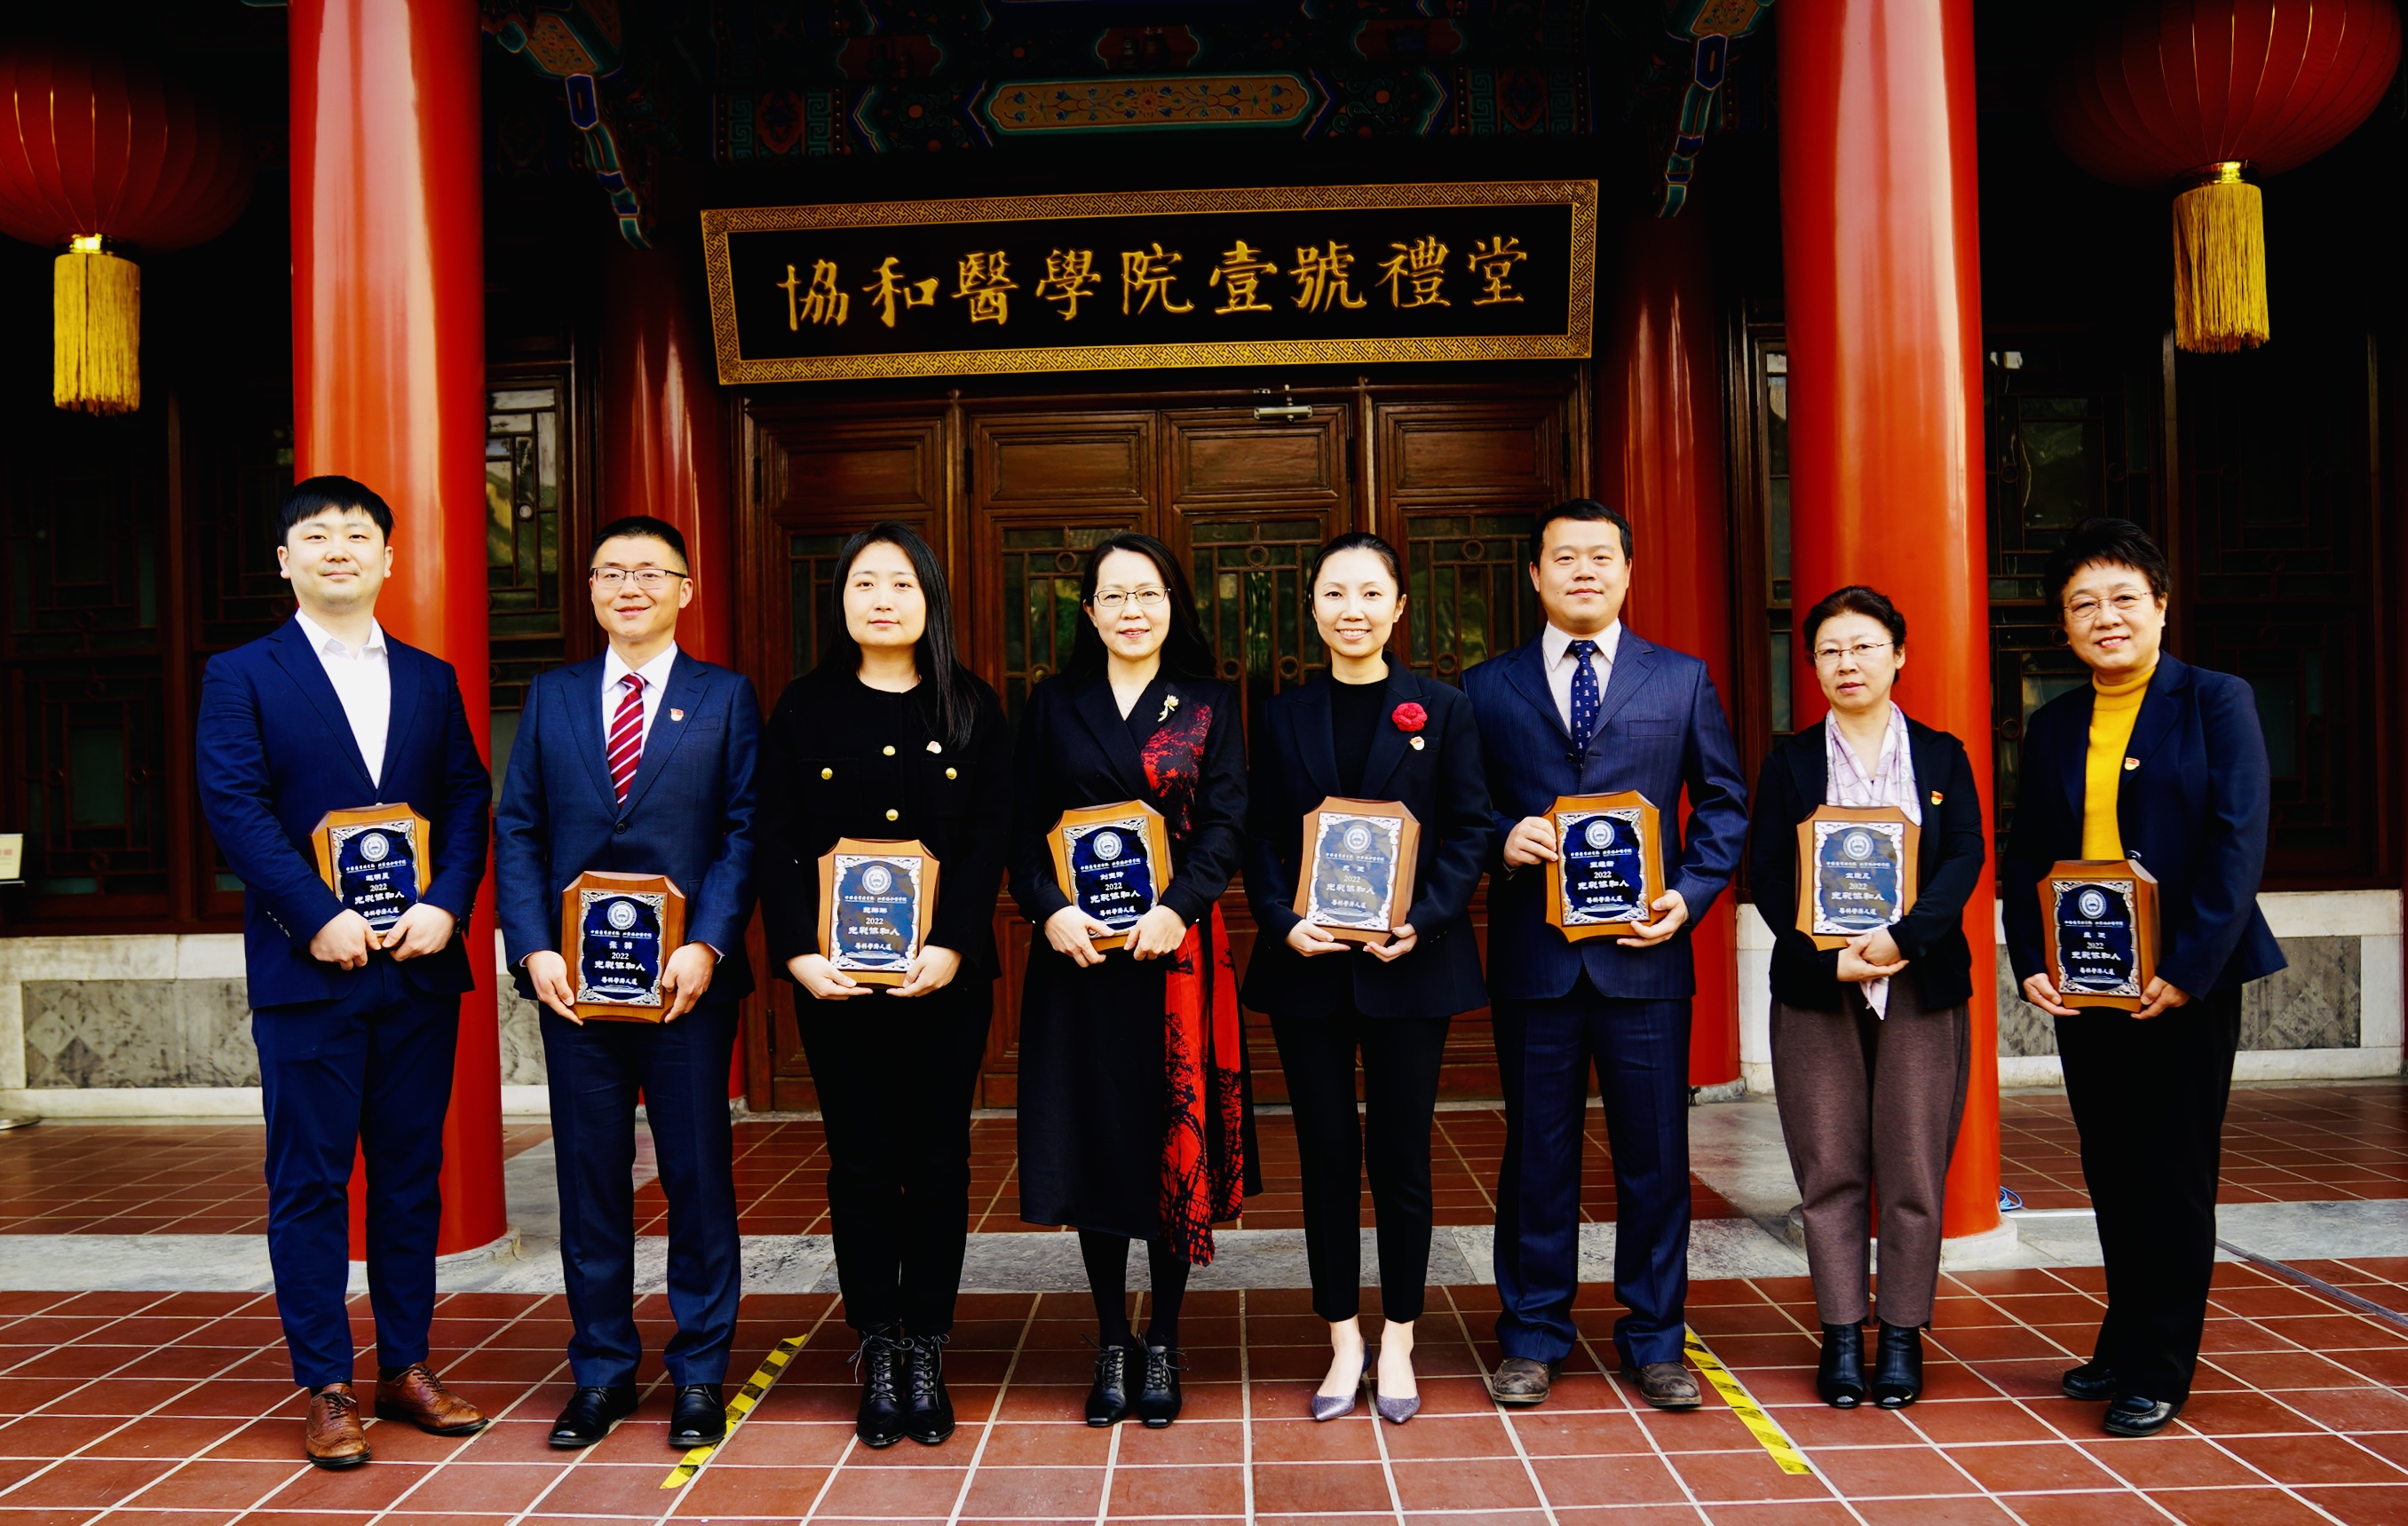 五和博澳产学研首席科学家刘玉玲教授荣获“光彩协和人”称号